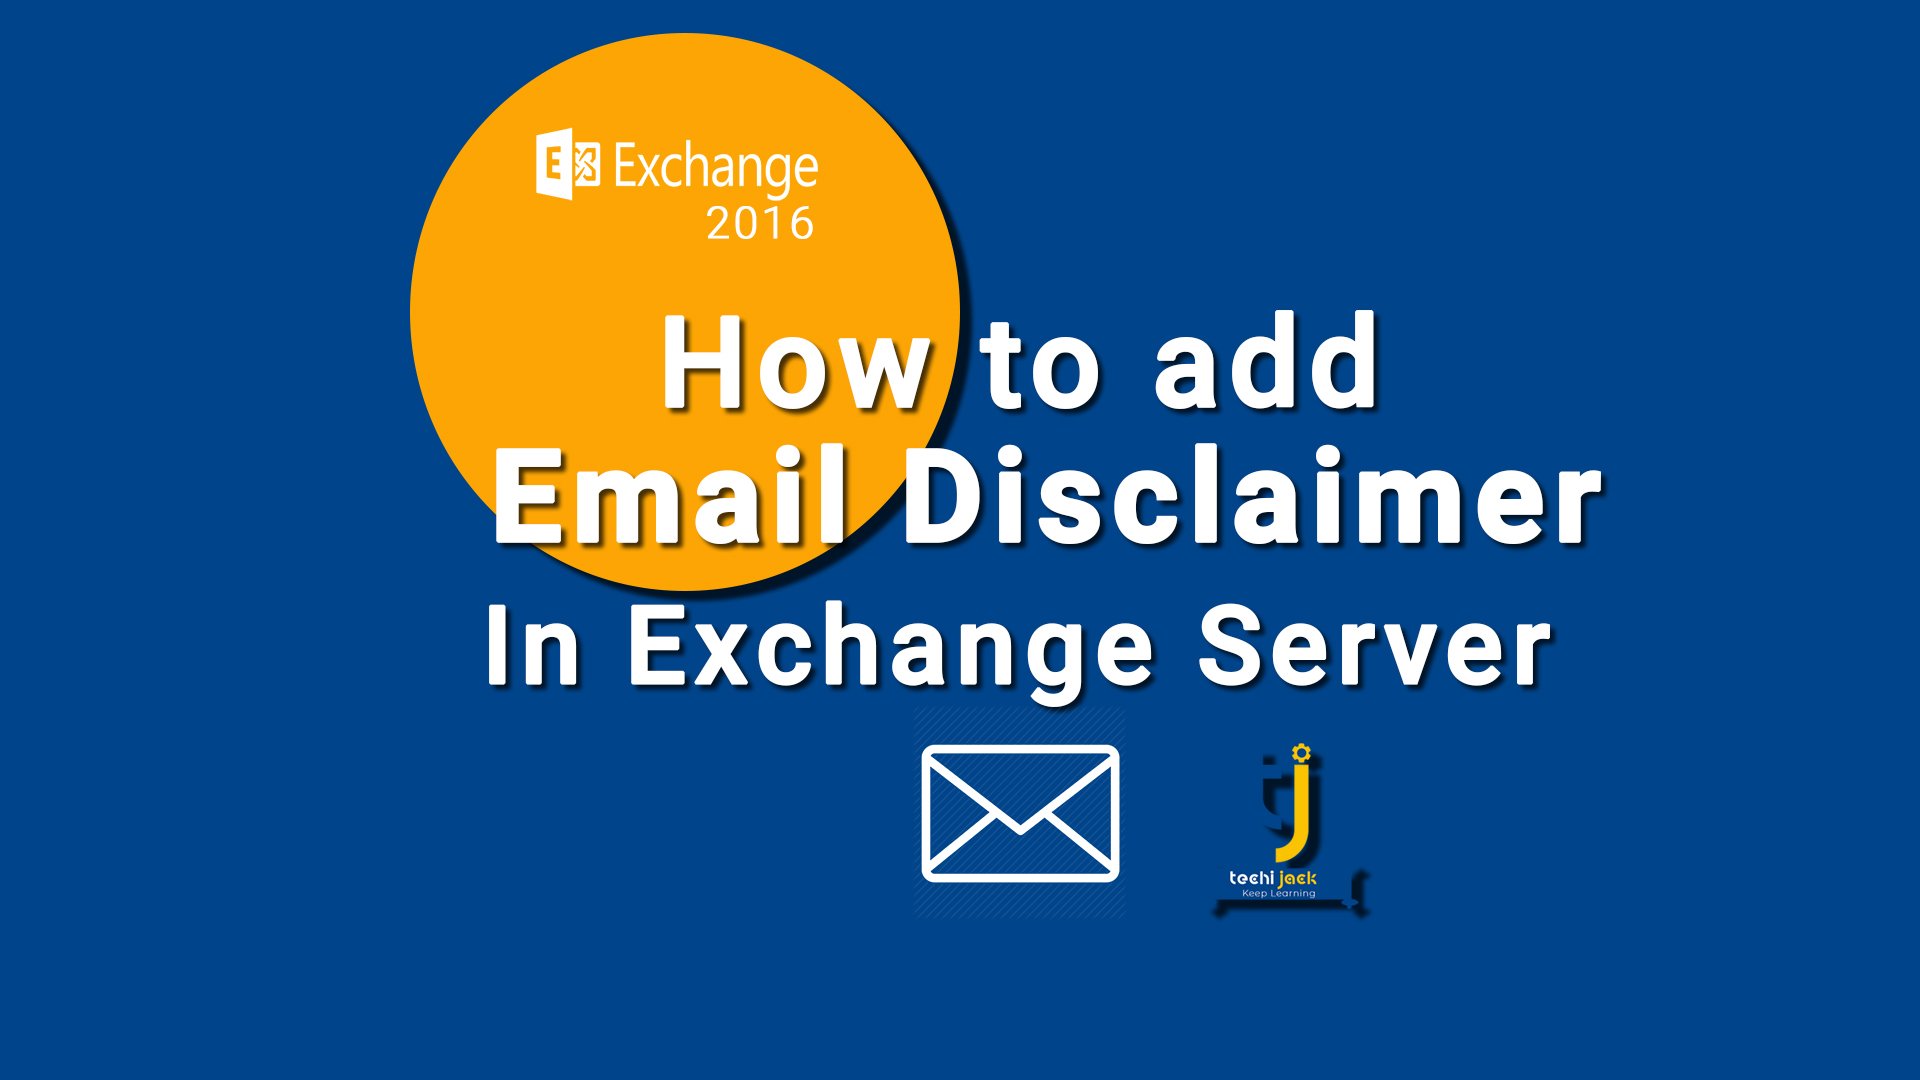 Disclaimer in exchange server, exchange server disclaimer